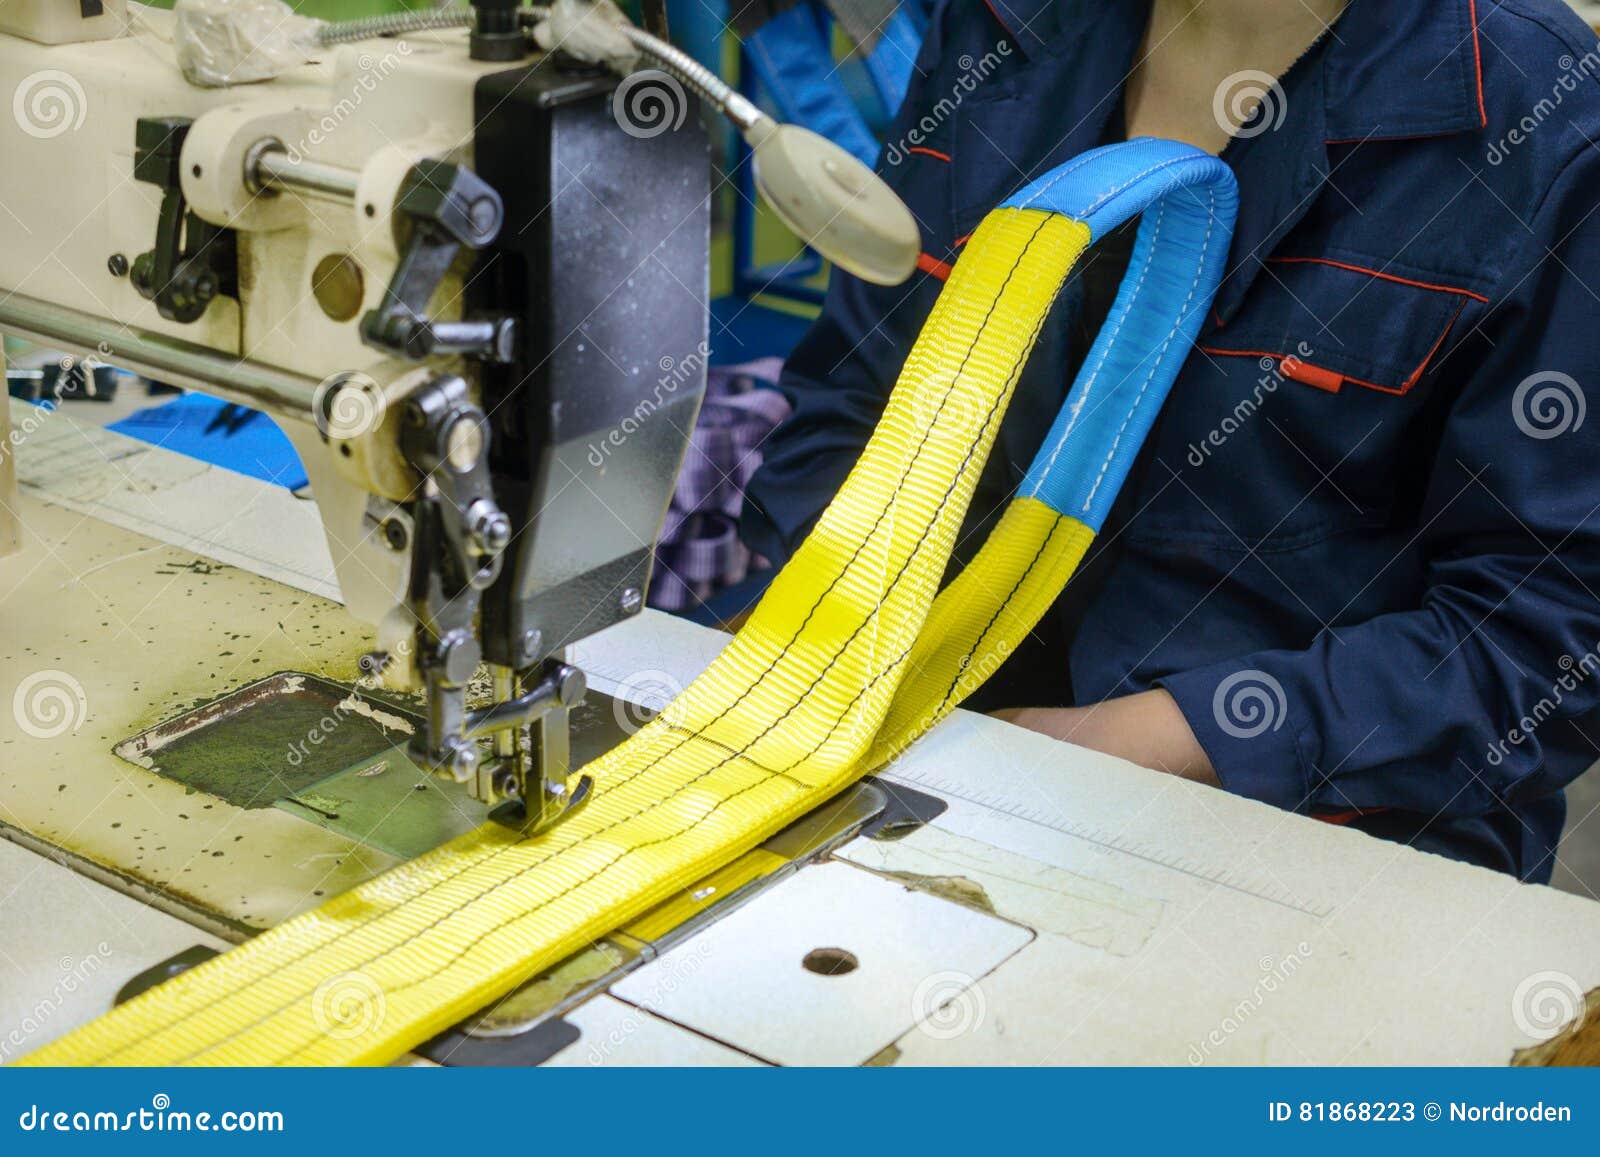 Машинка шьет назад. Швейная машина для текстильных строп. Шить стропы. Швейная машина которая пришивает стропу. Рукоделие шитье - стропа-.